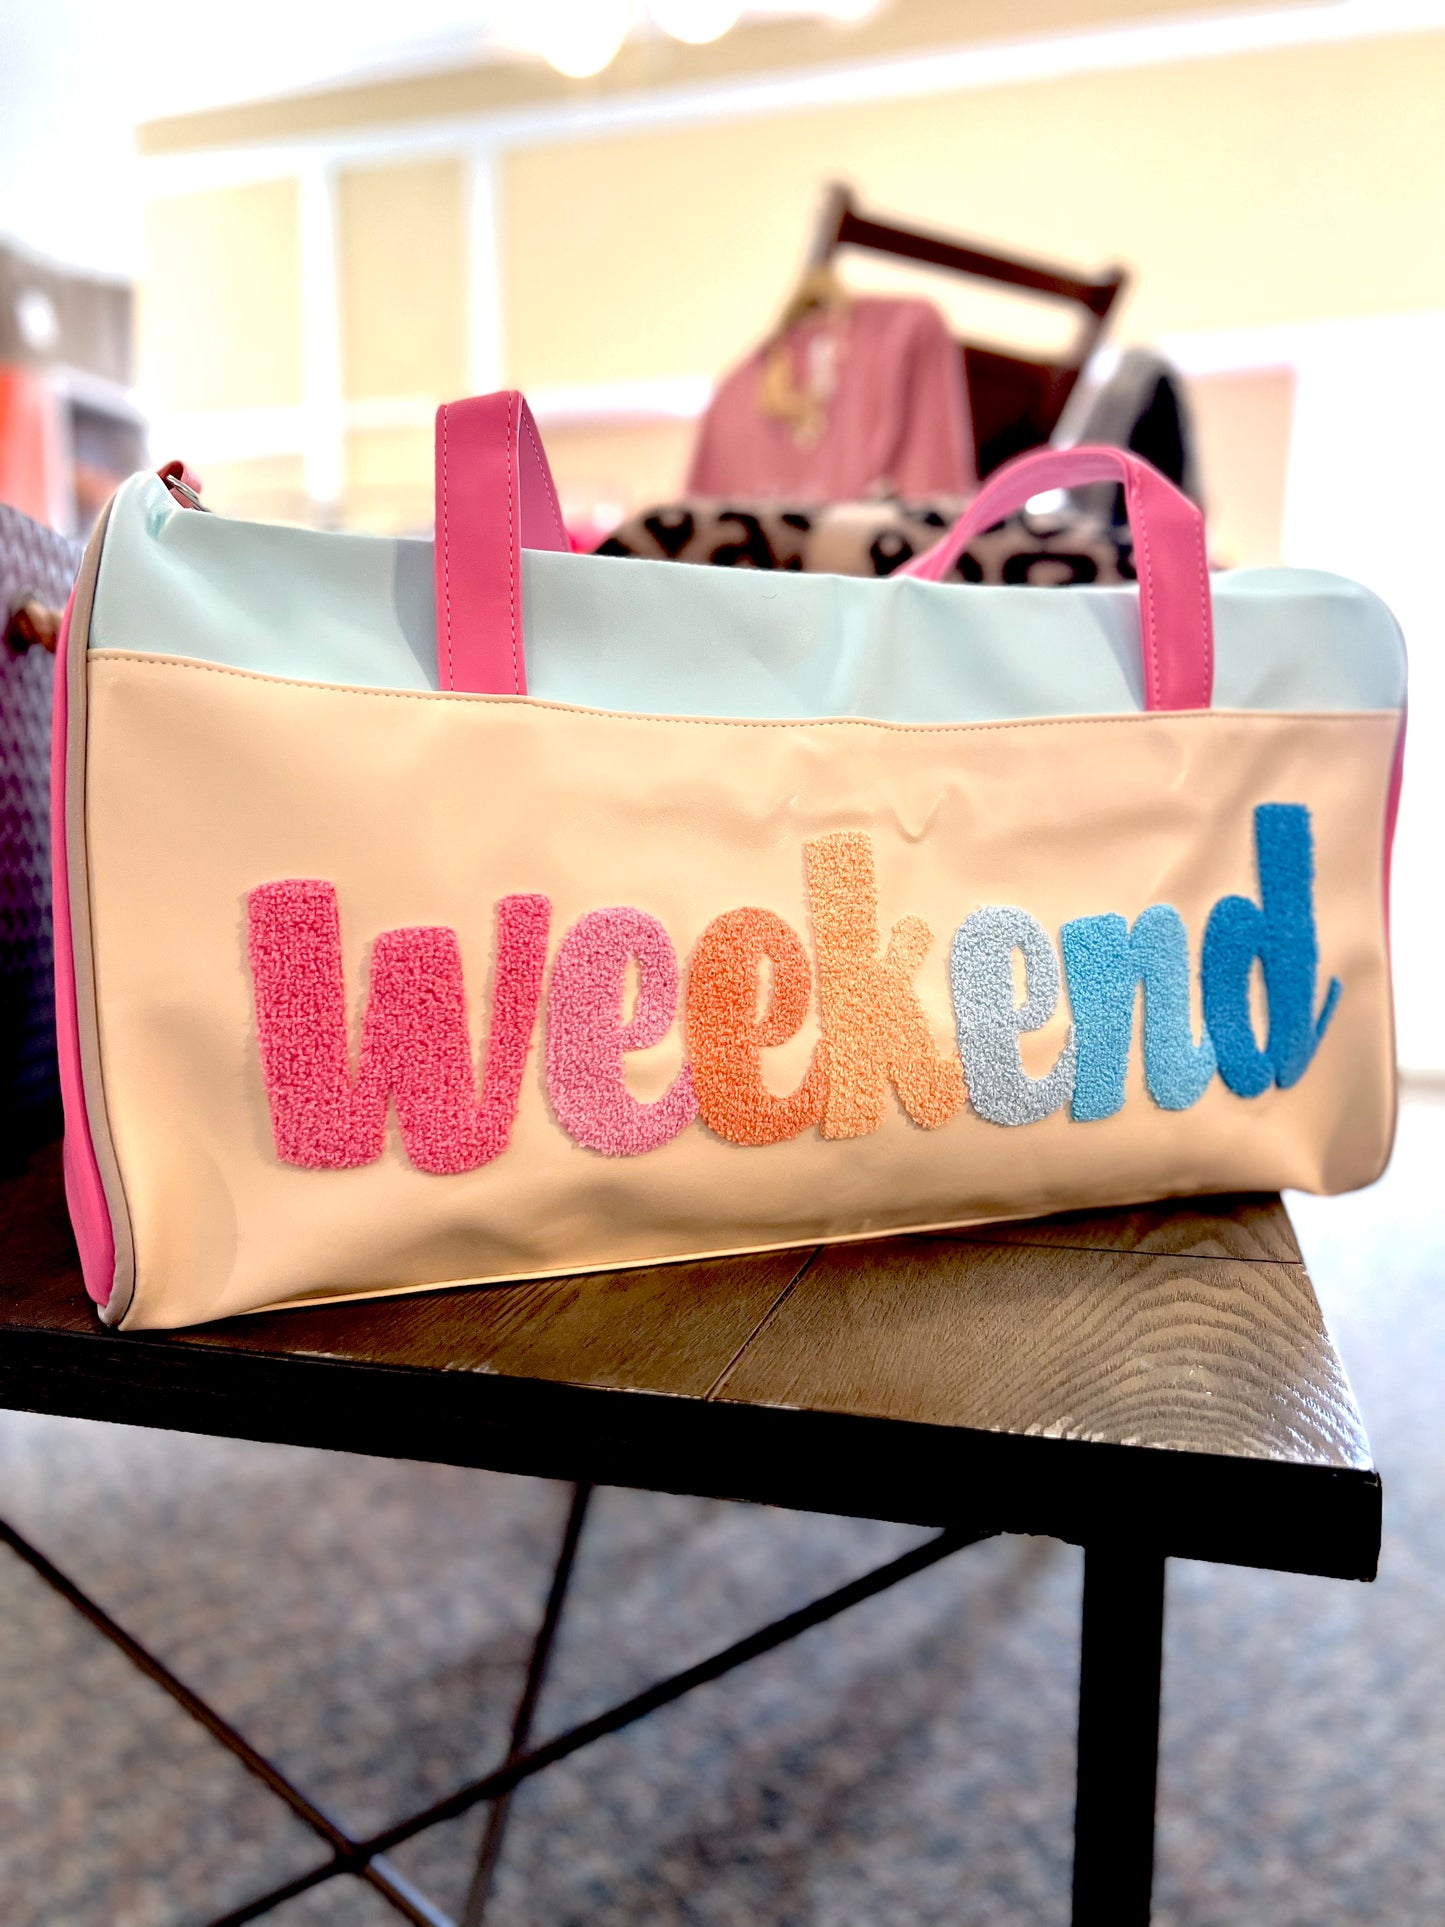 Weekend Duffle Bag